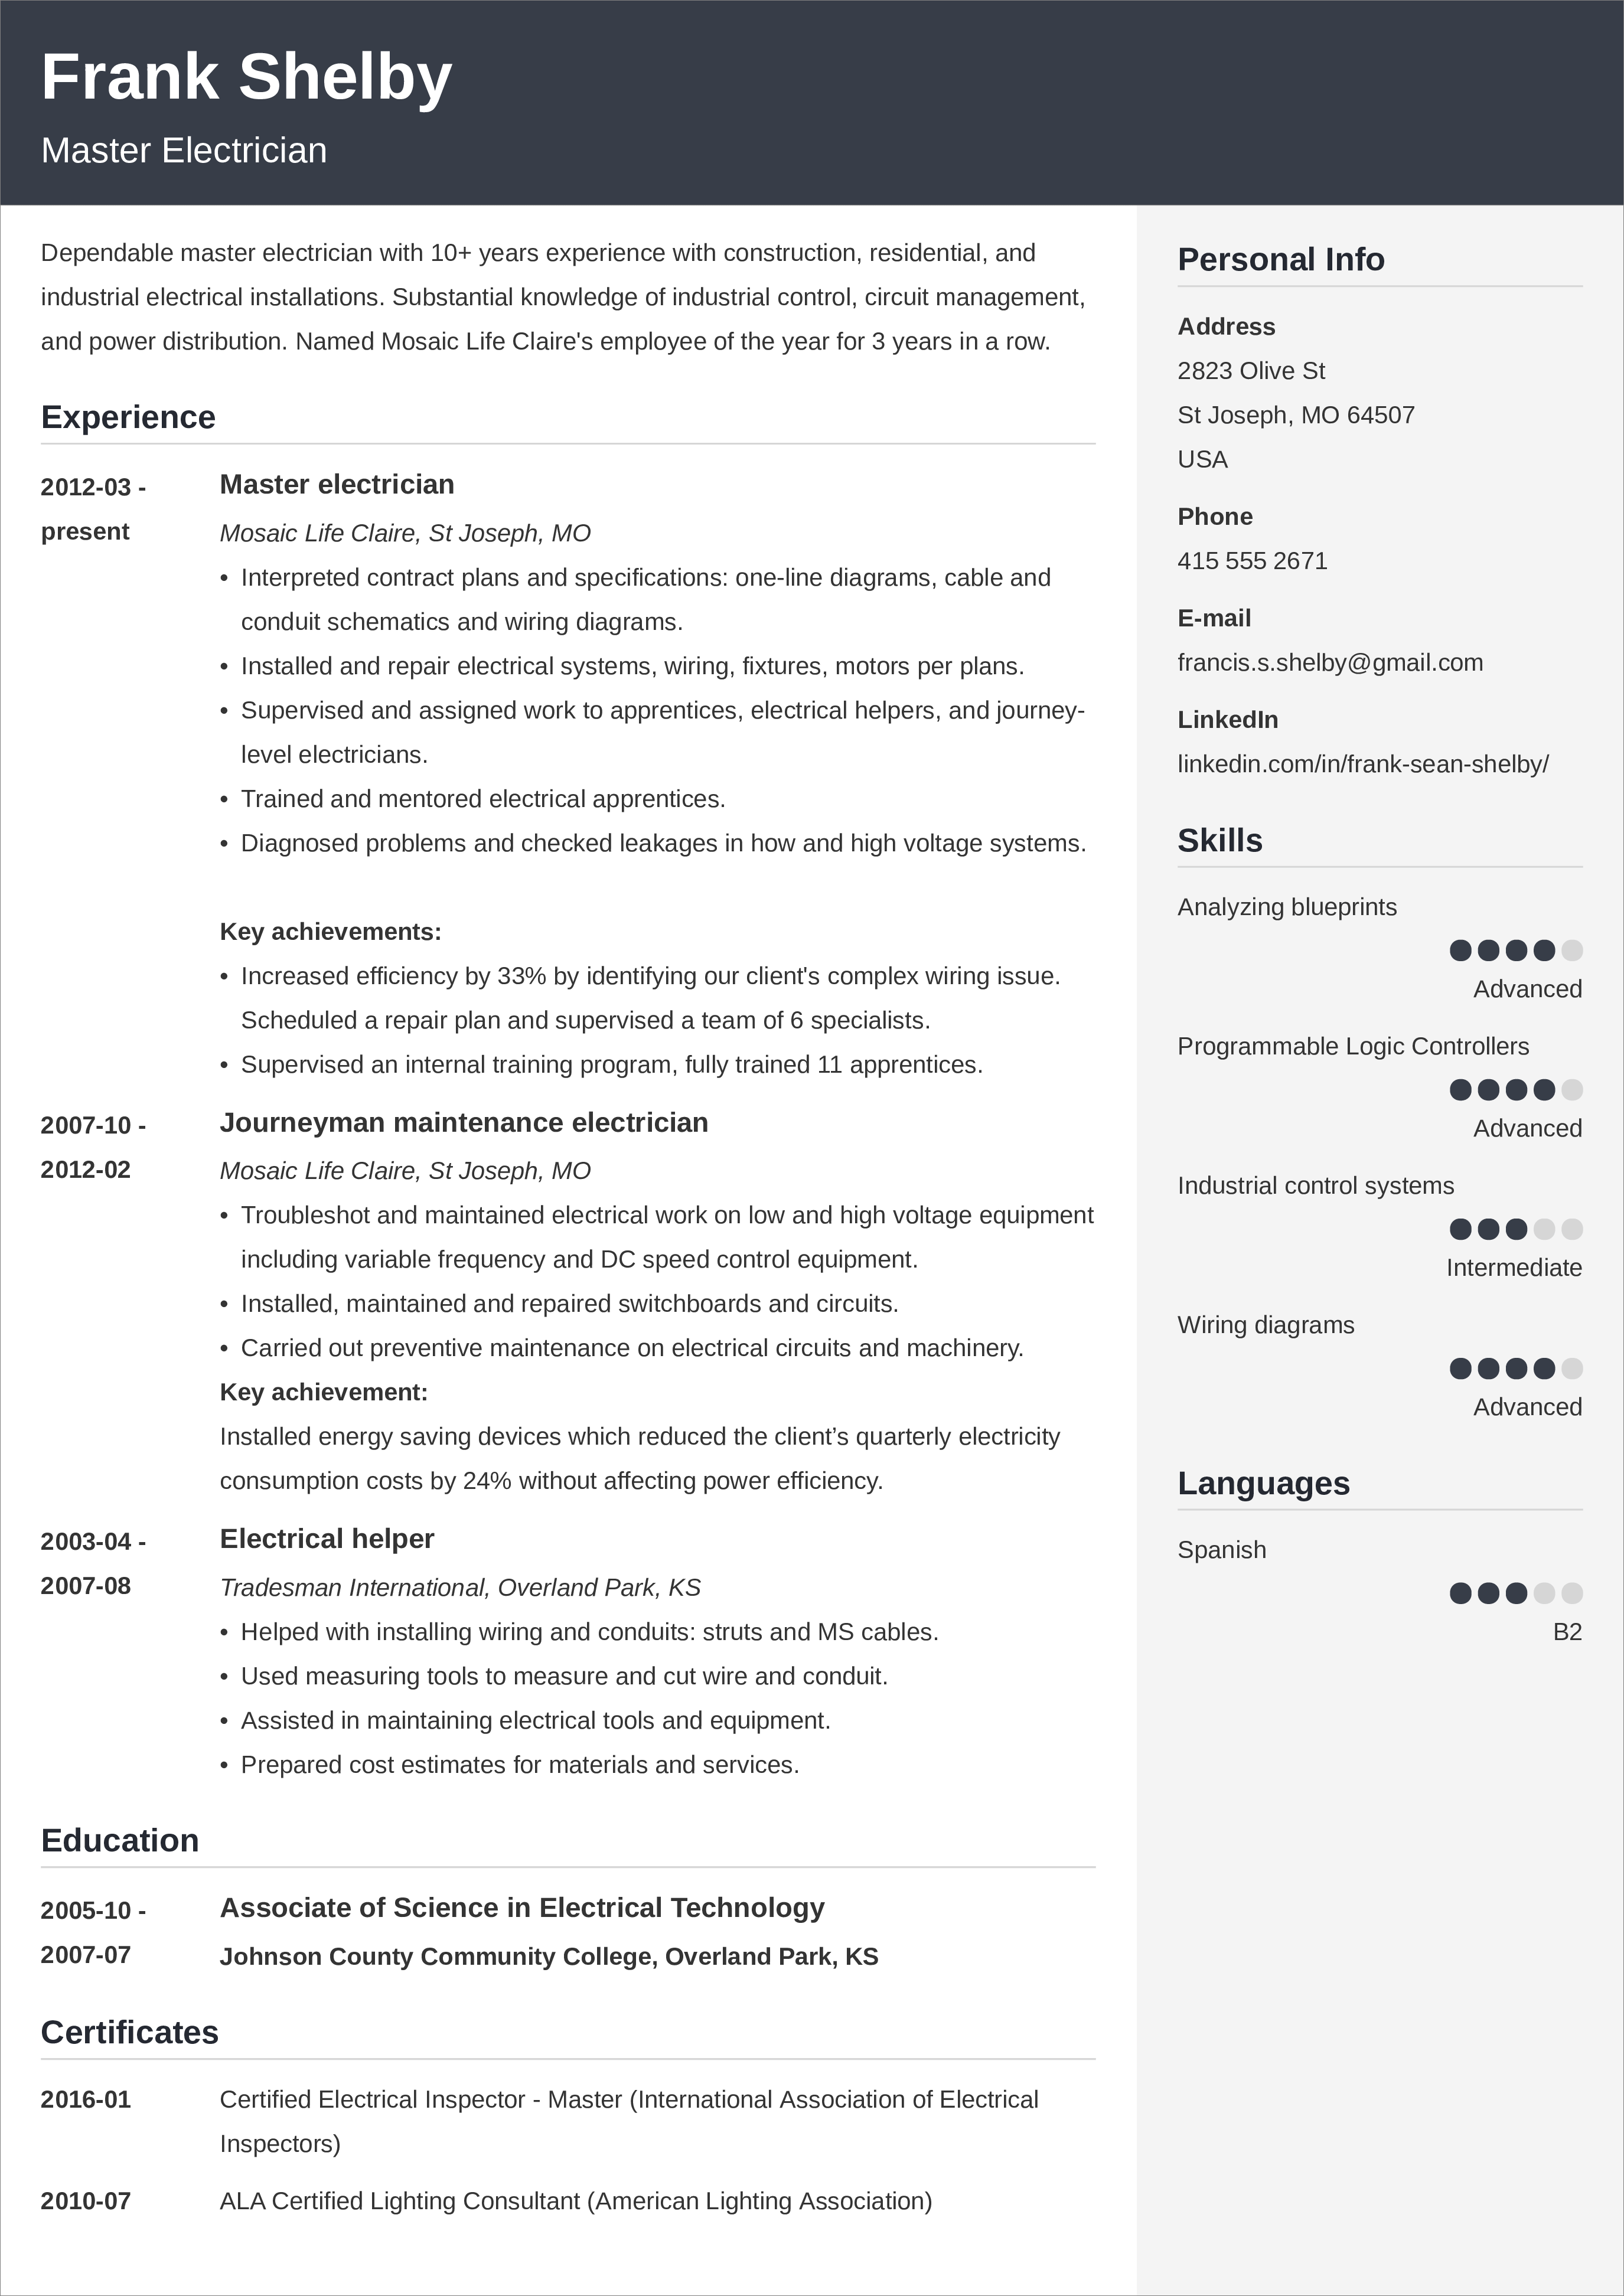 resume layout chronological